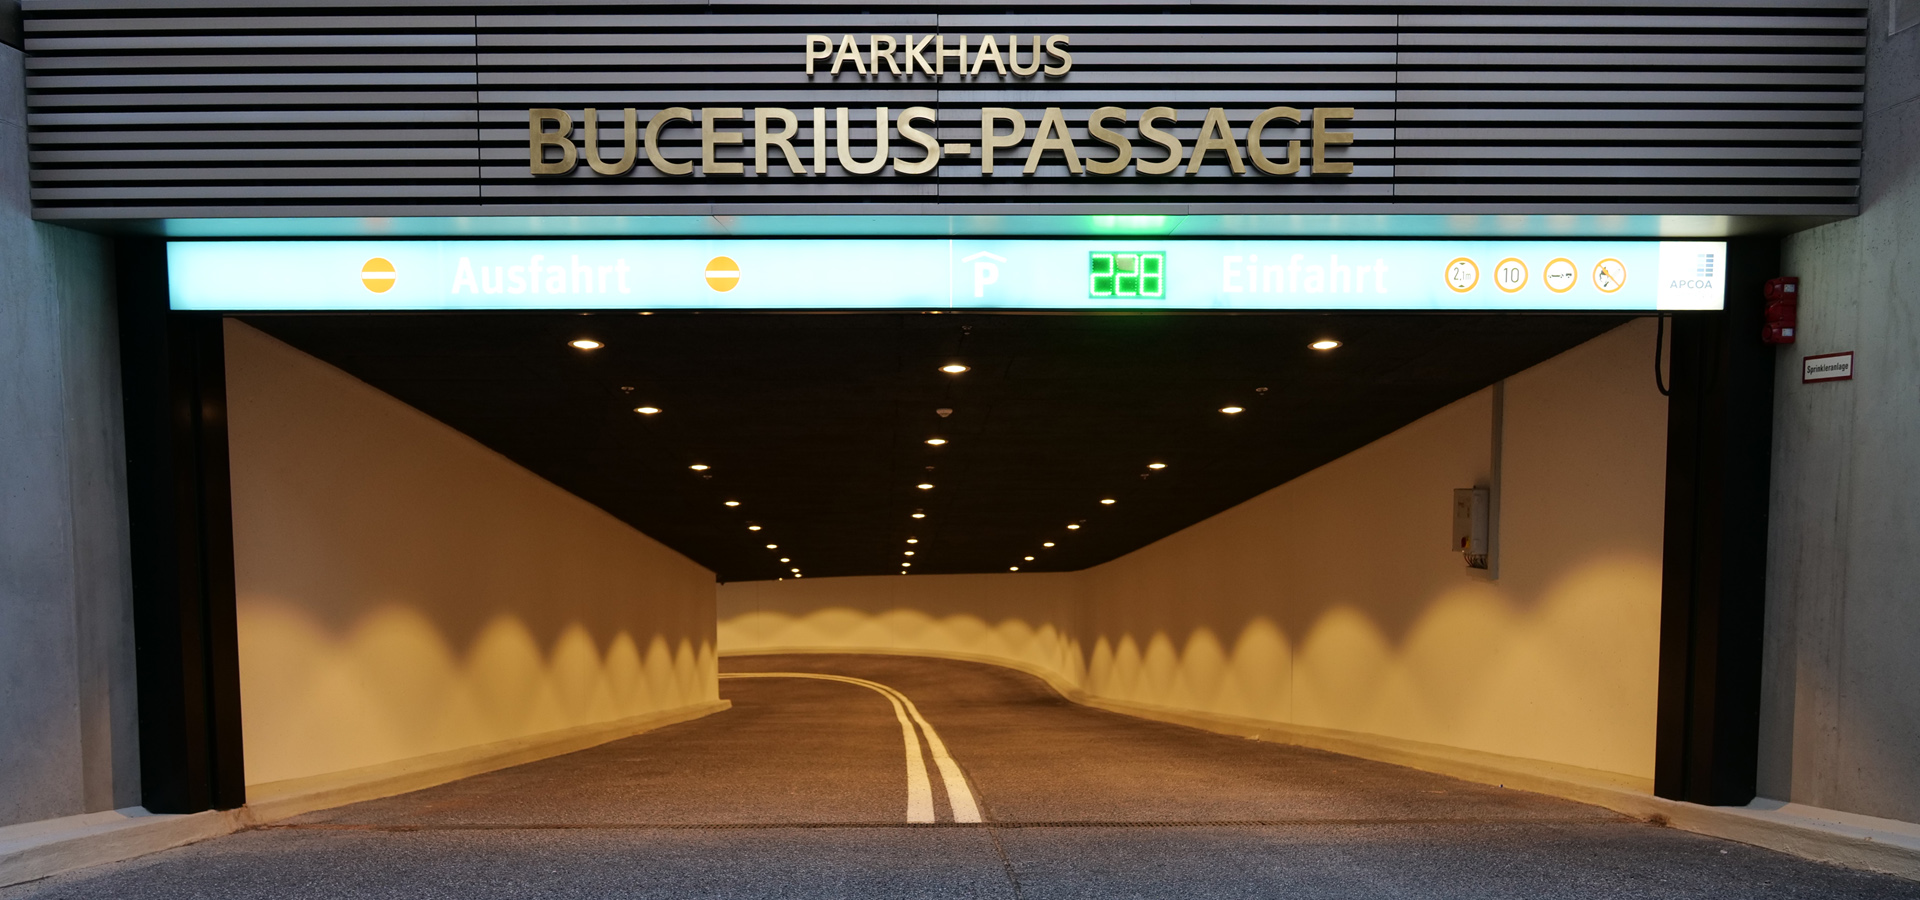 Christensen Tore für Tiefgaragen sind sehr oft im Großraum Hamburg installiert, hier in der neuen Bucerius-Passage